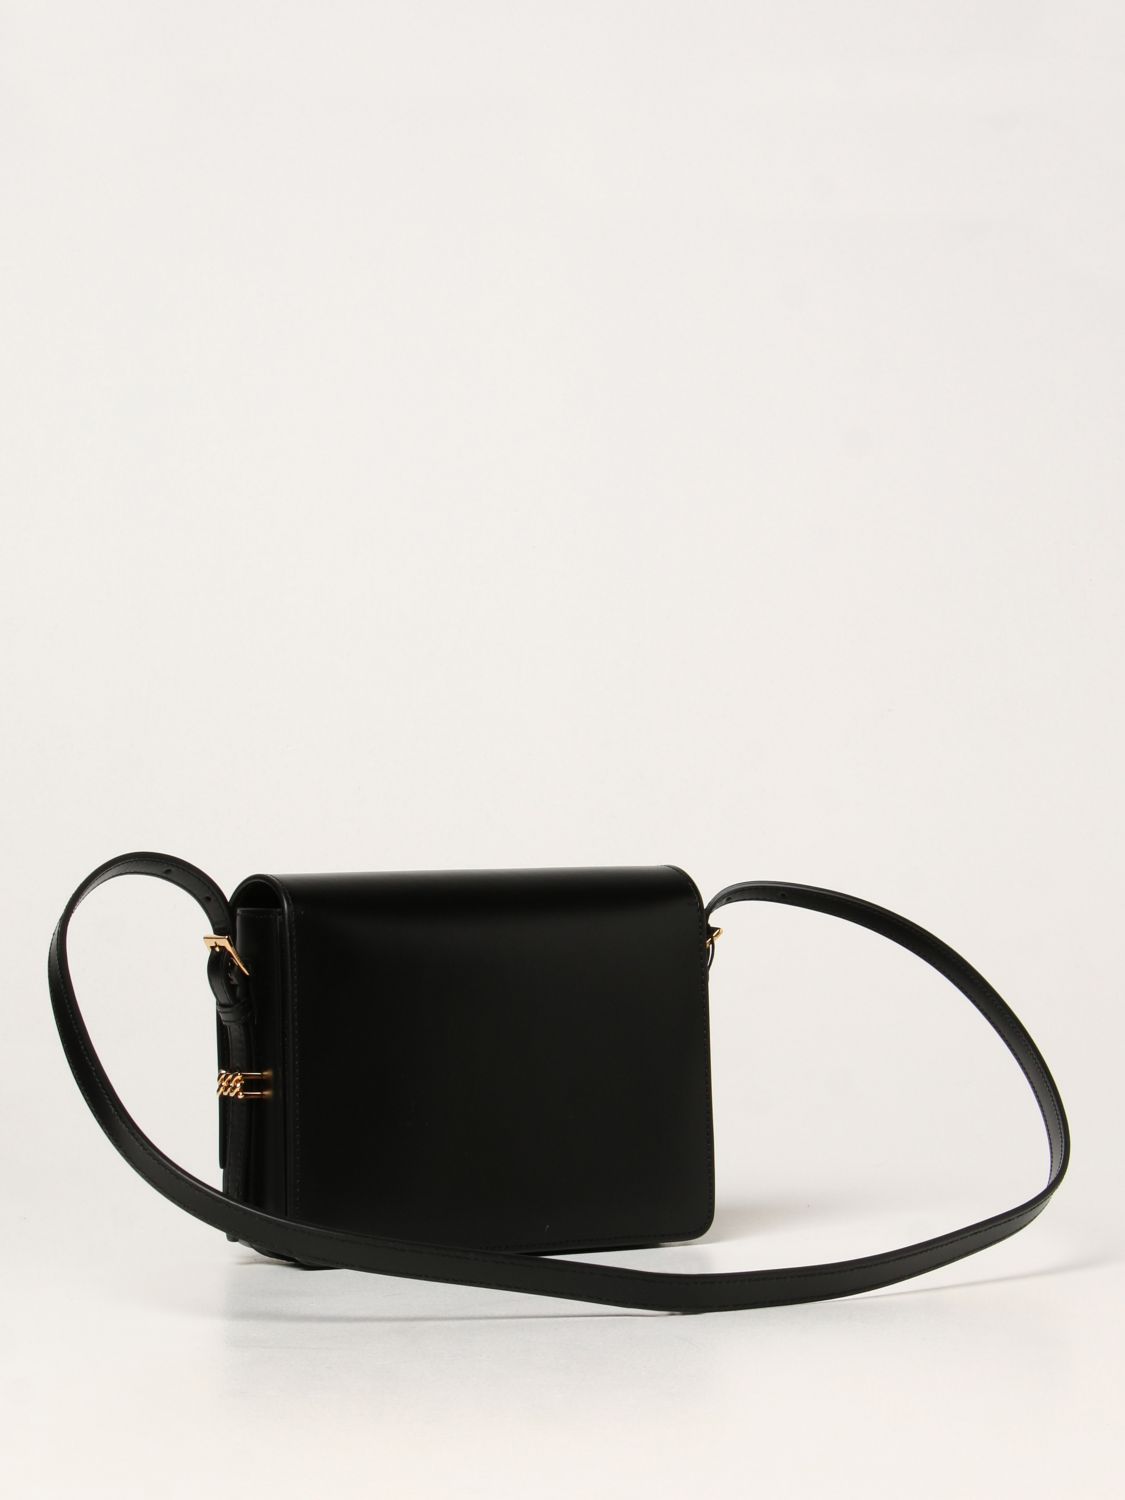 Burberry Grace Leather Shoulder Bag, Black